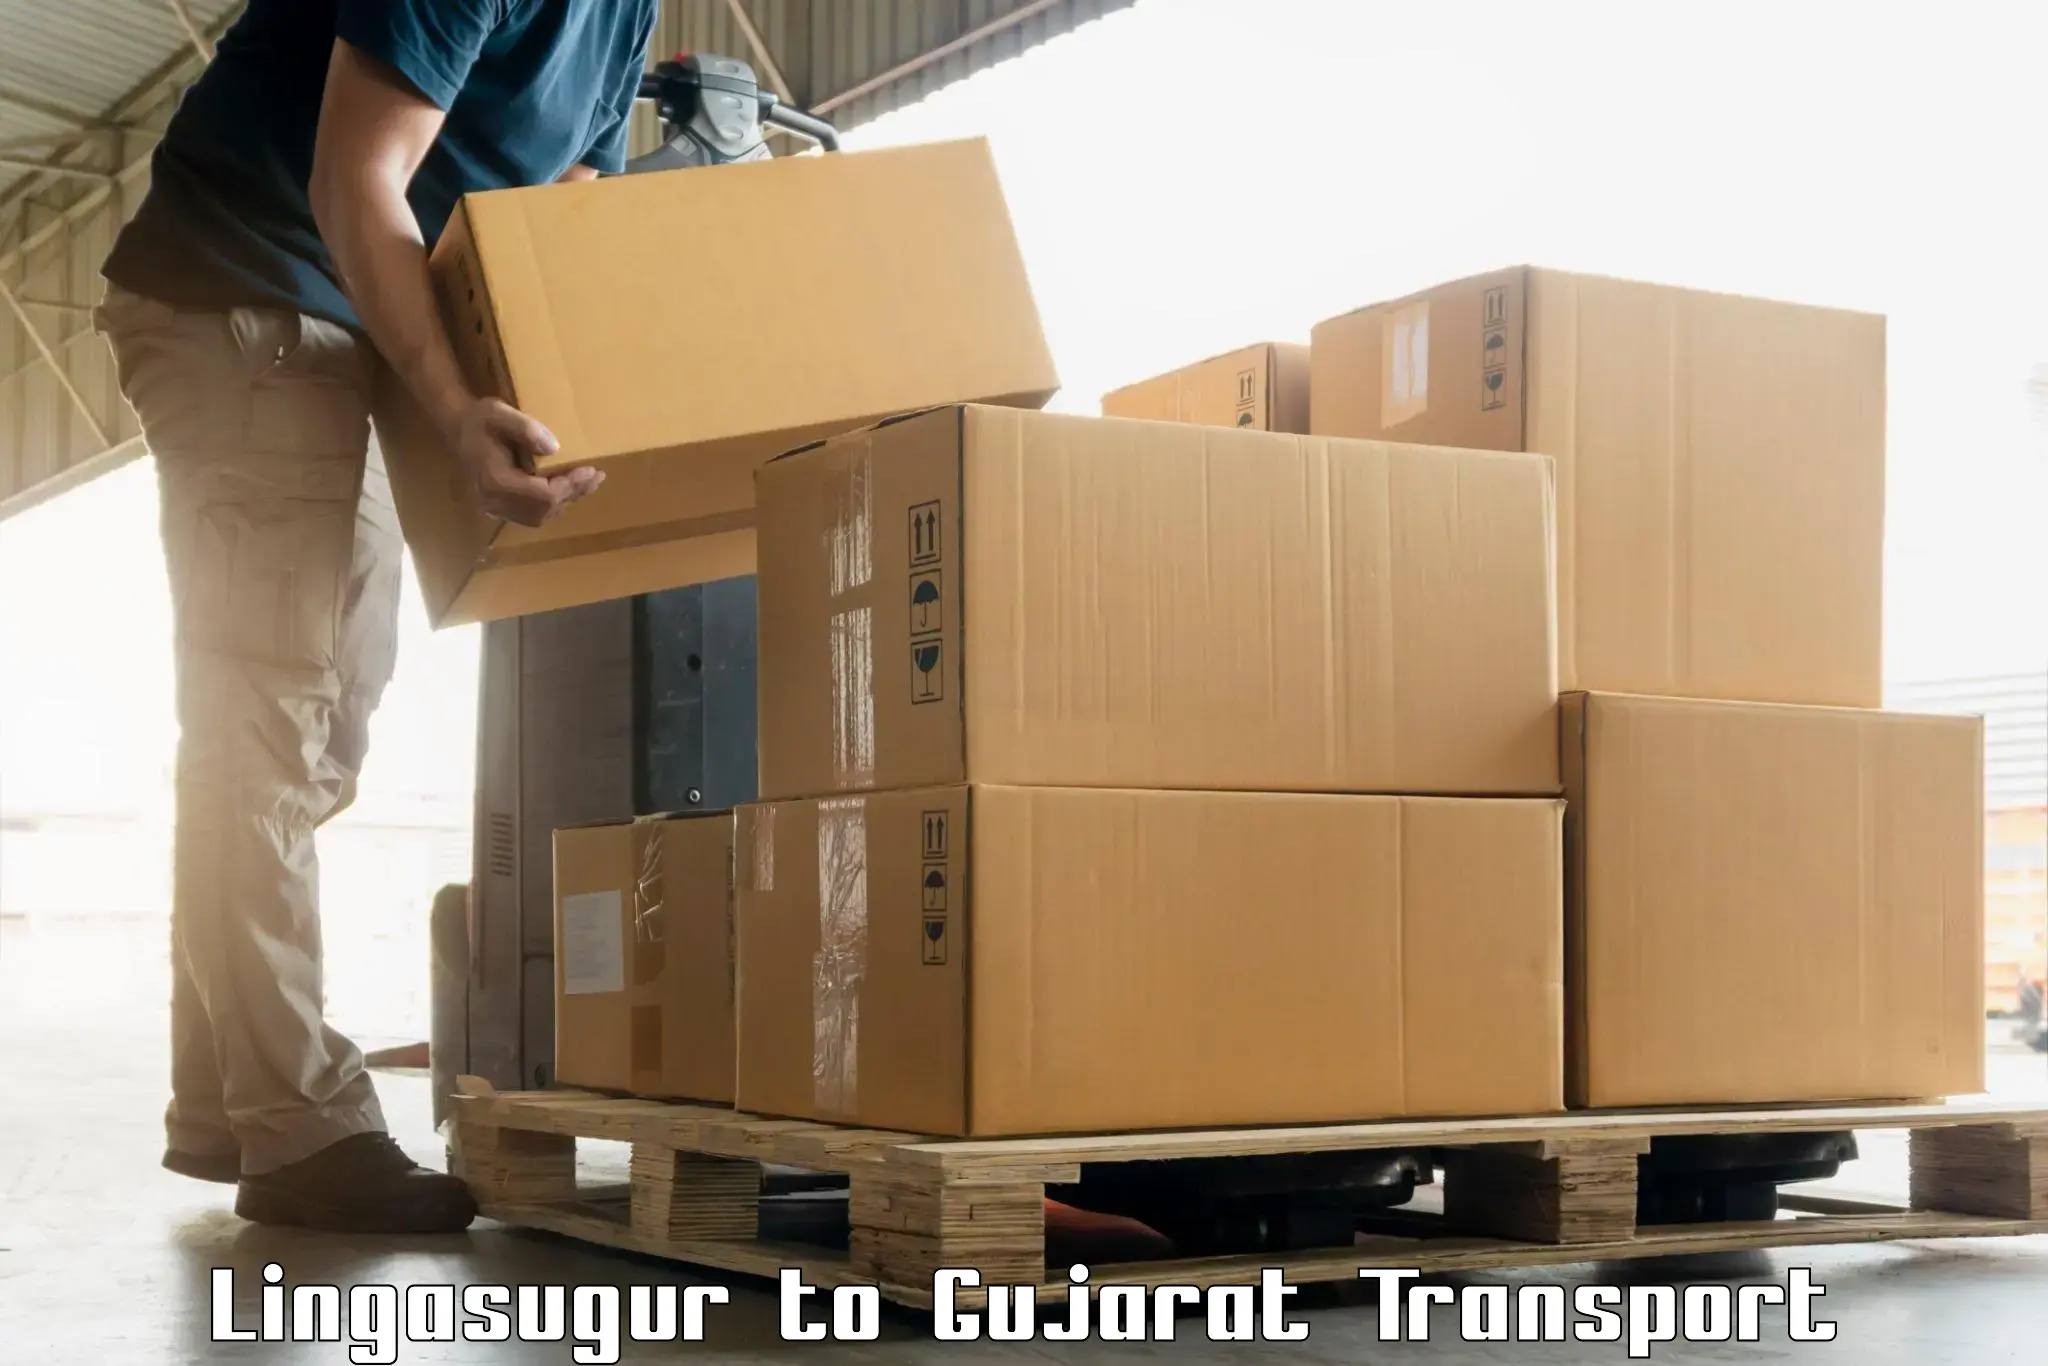 India truck logistics services Lingasugur to Kadodara